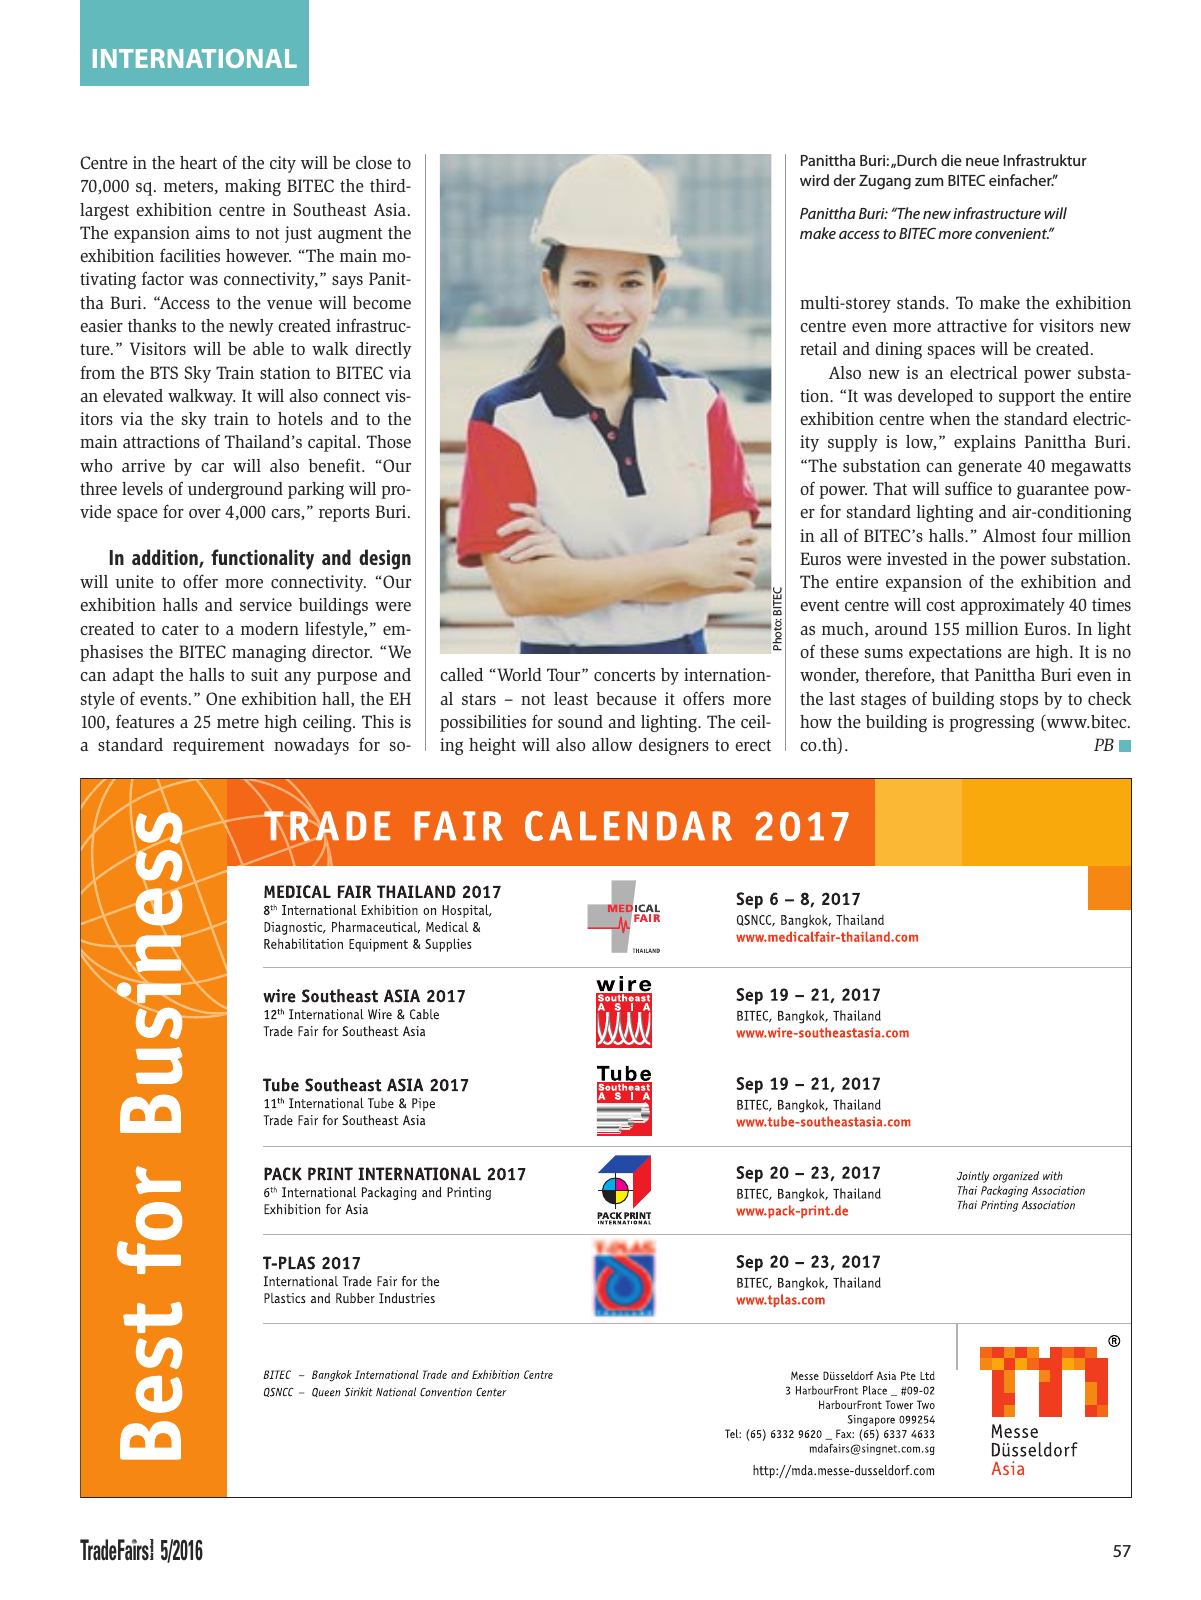 Vorschau TFI Trade-Fairs-International 05/2016 Seite 57